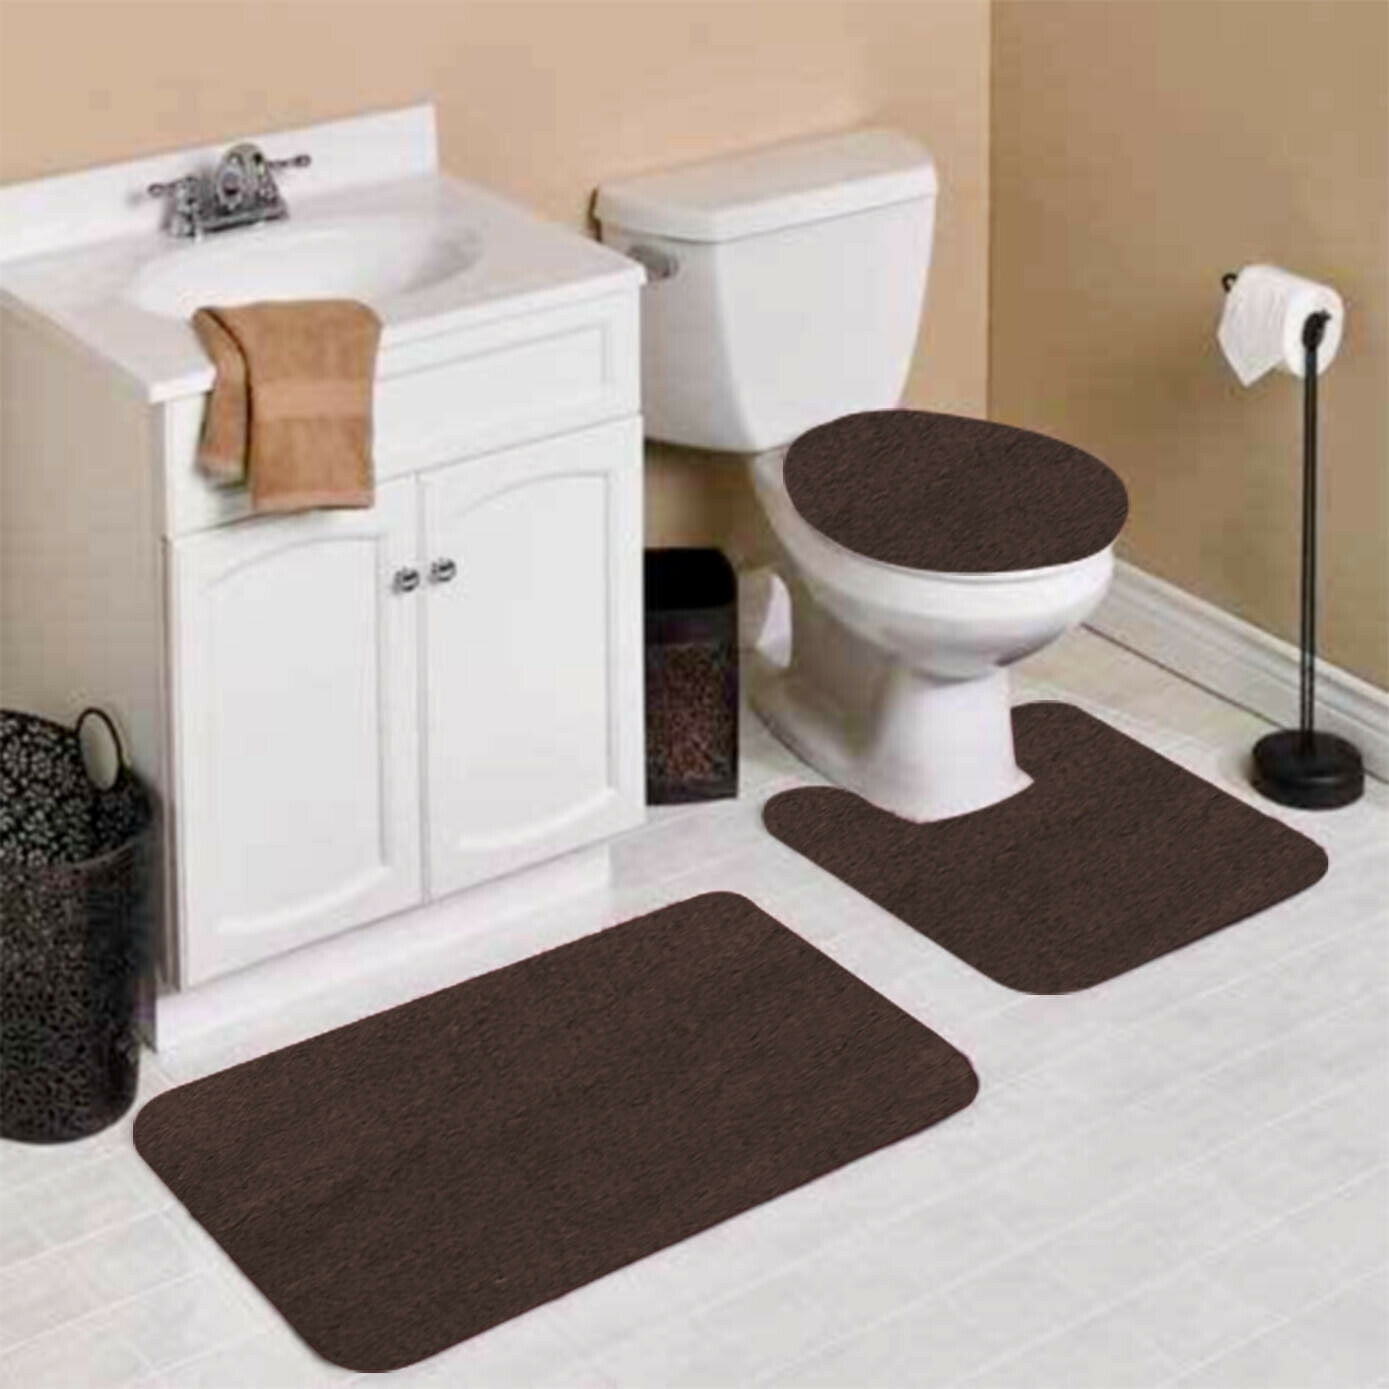 Kansas City Chiefs 3PC Non-Slip Bathroom Bath Mat Toilet Lid Cover Contour Rug 